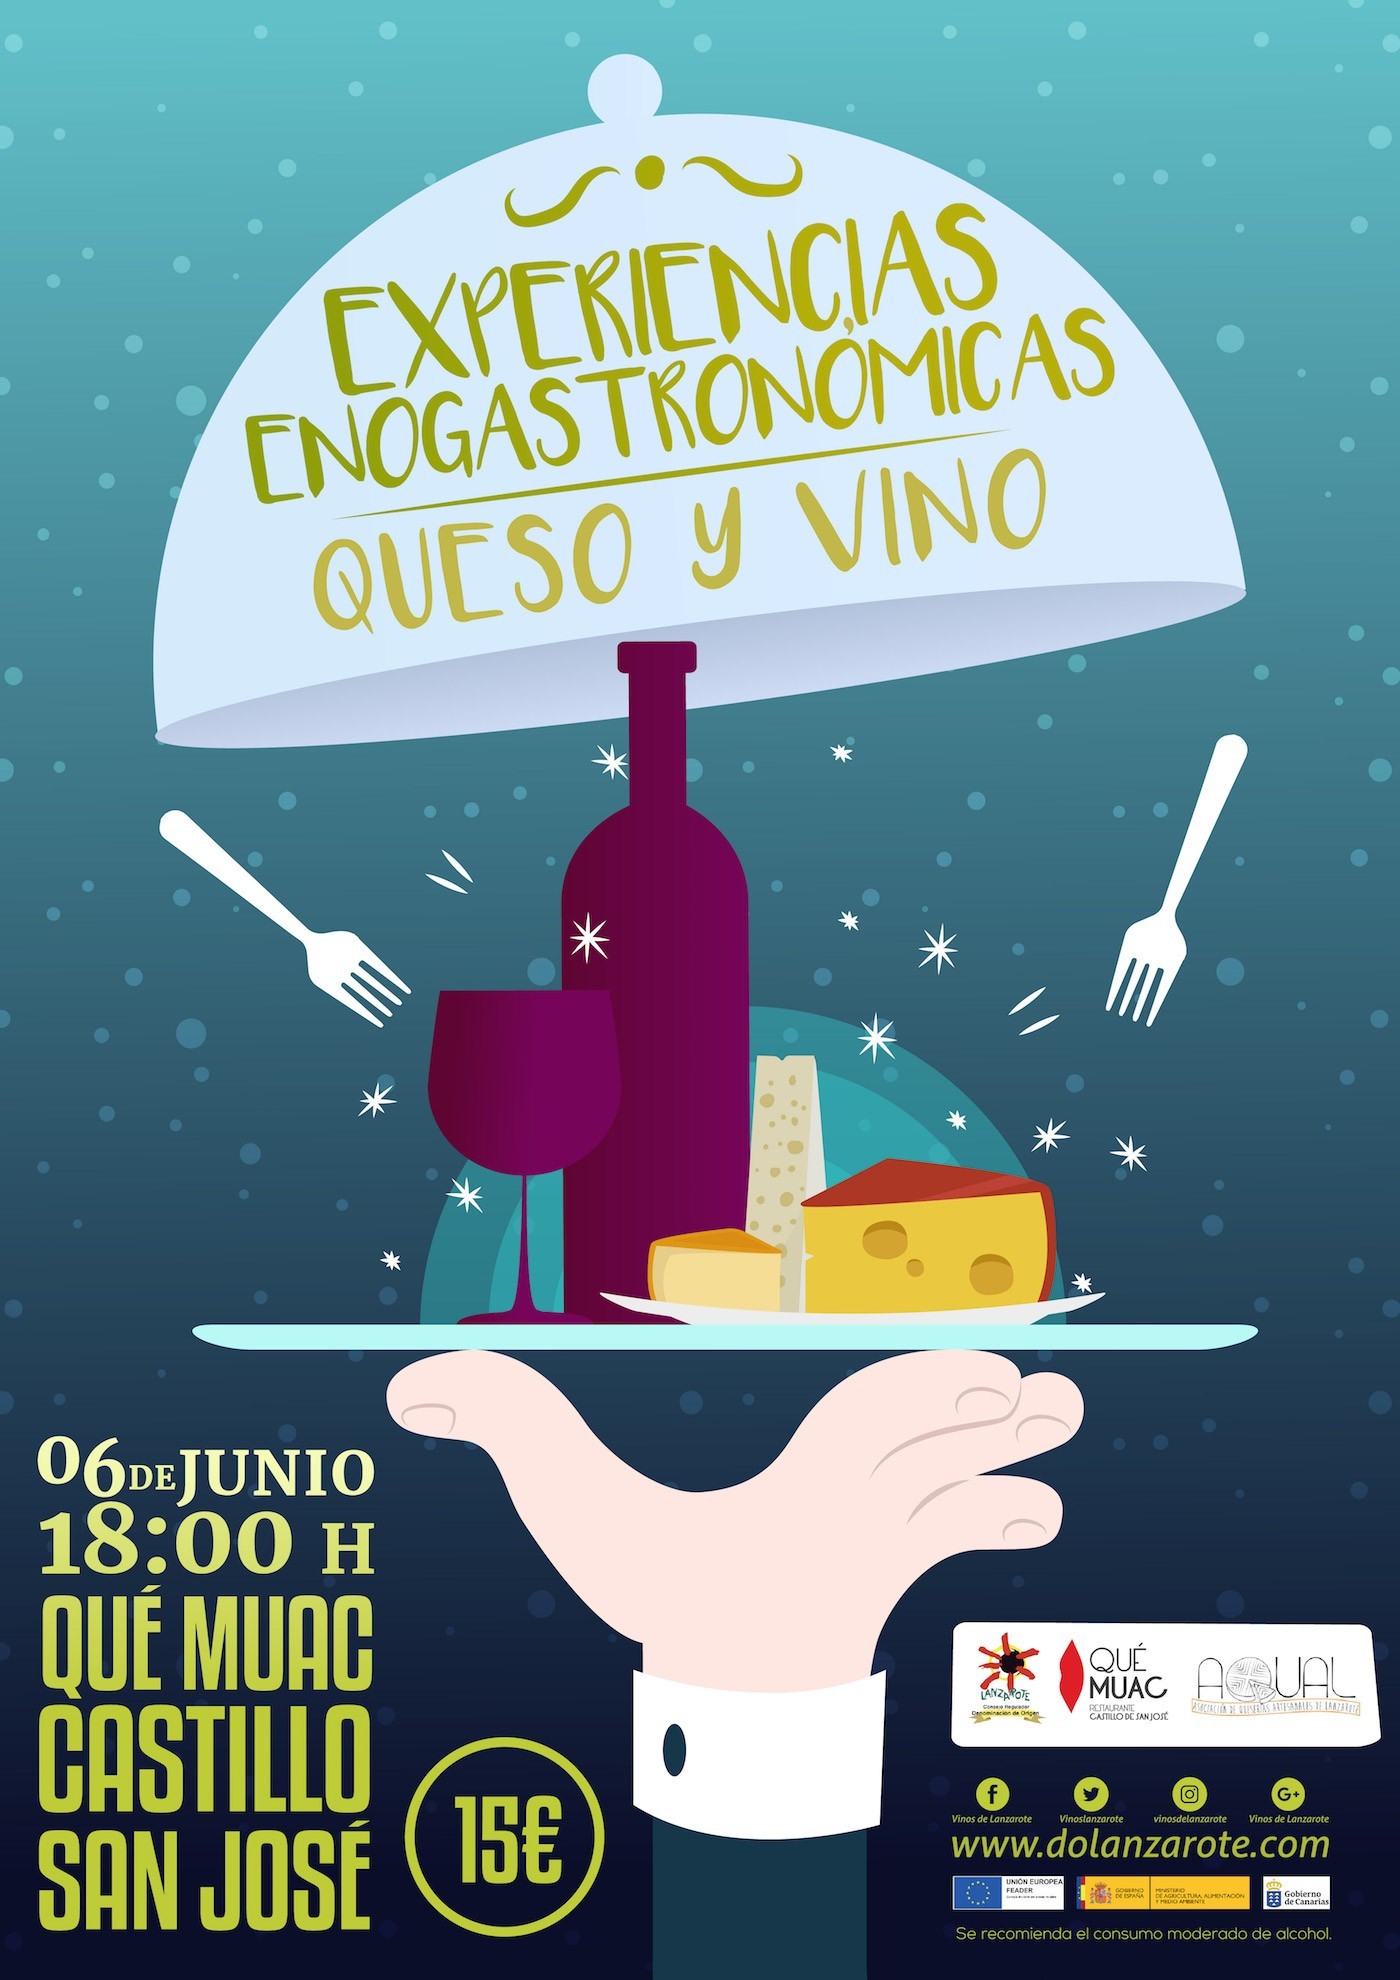 (Español) Experiencias-enogastronómicas-cata-de-quesos-artesanales-de-Lanzarote-y-vinos